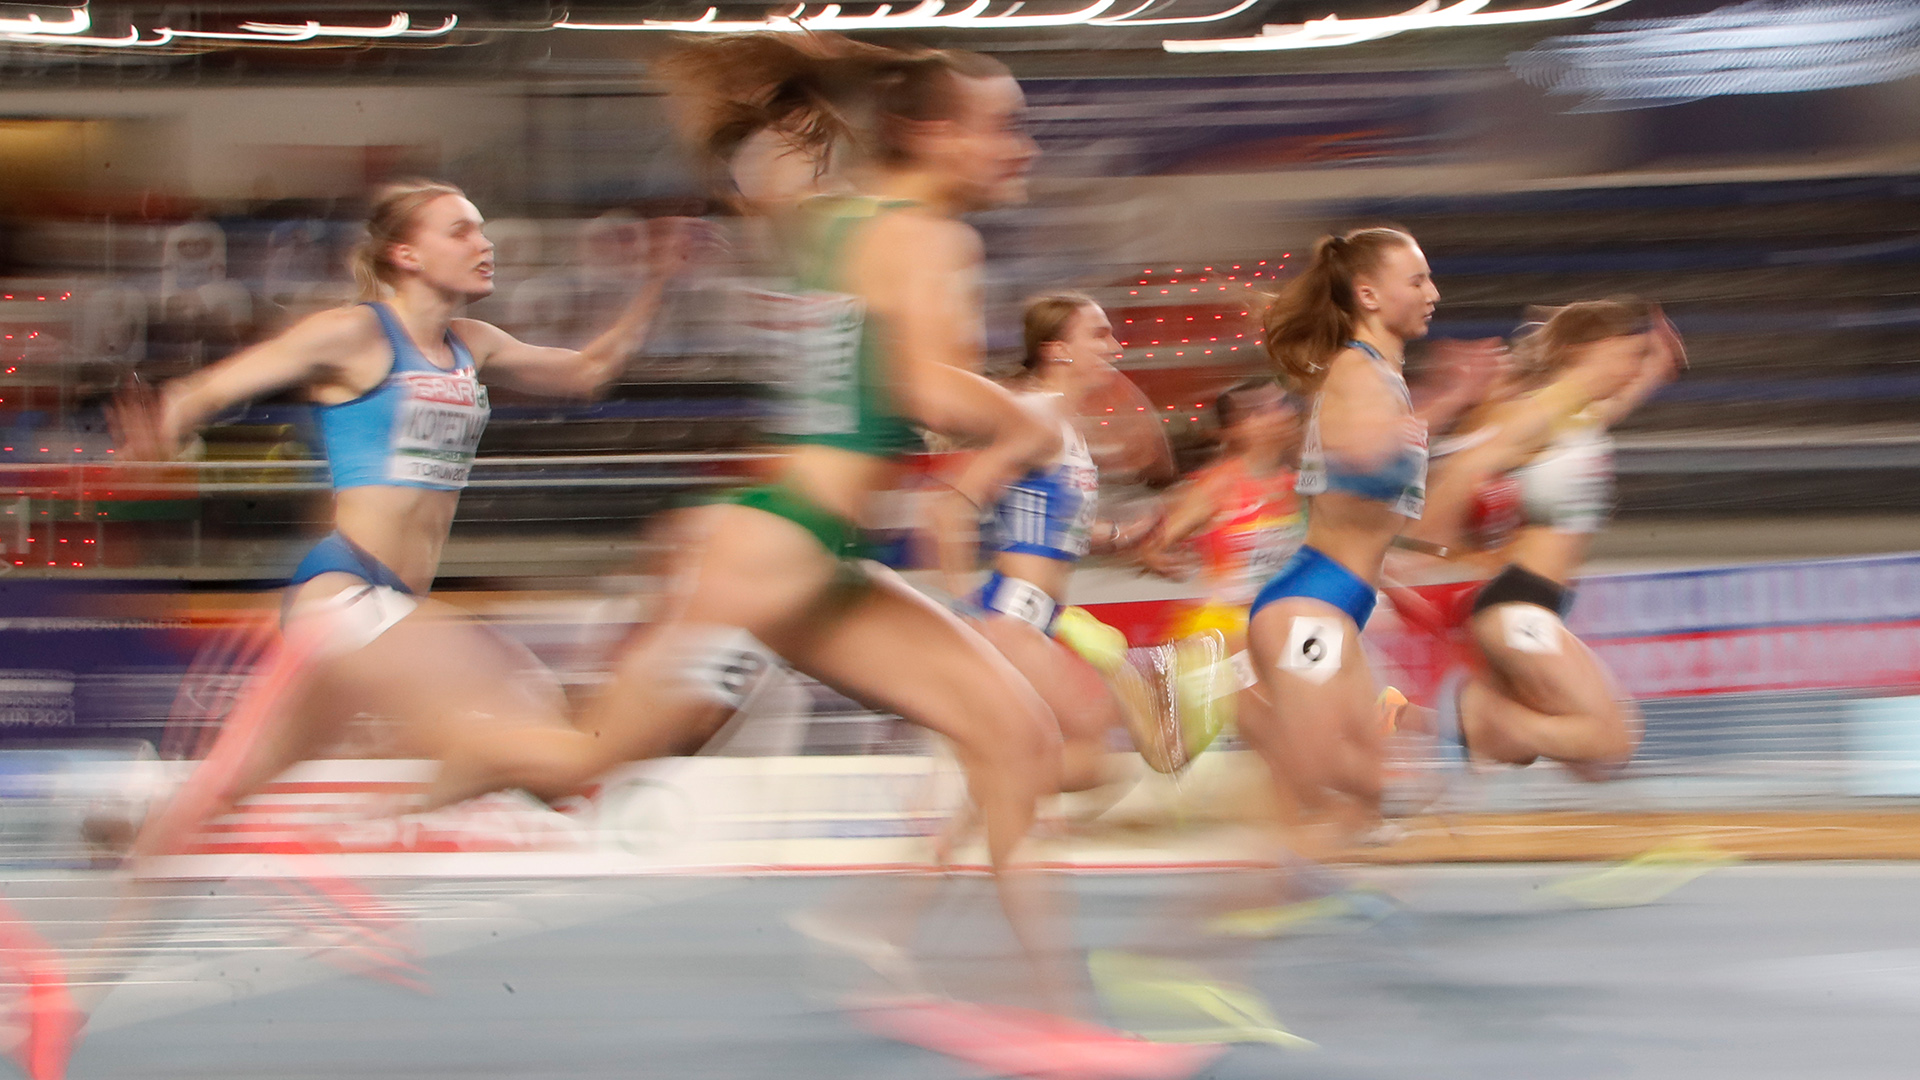 Polen, Torun: 60-Meter-Lauf der Frauen bei der Leichtathletik-EM | dpa